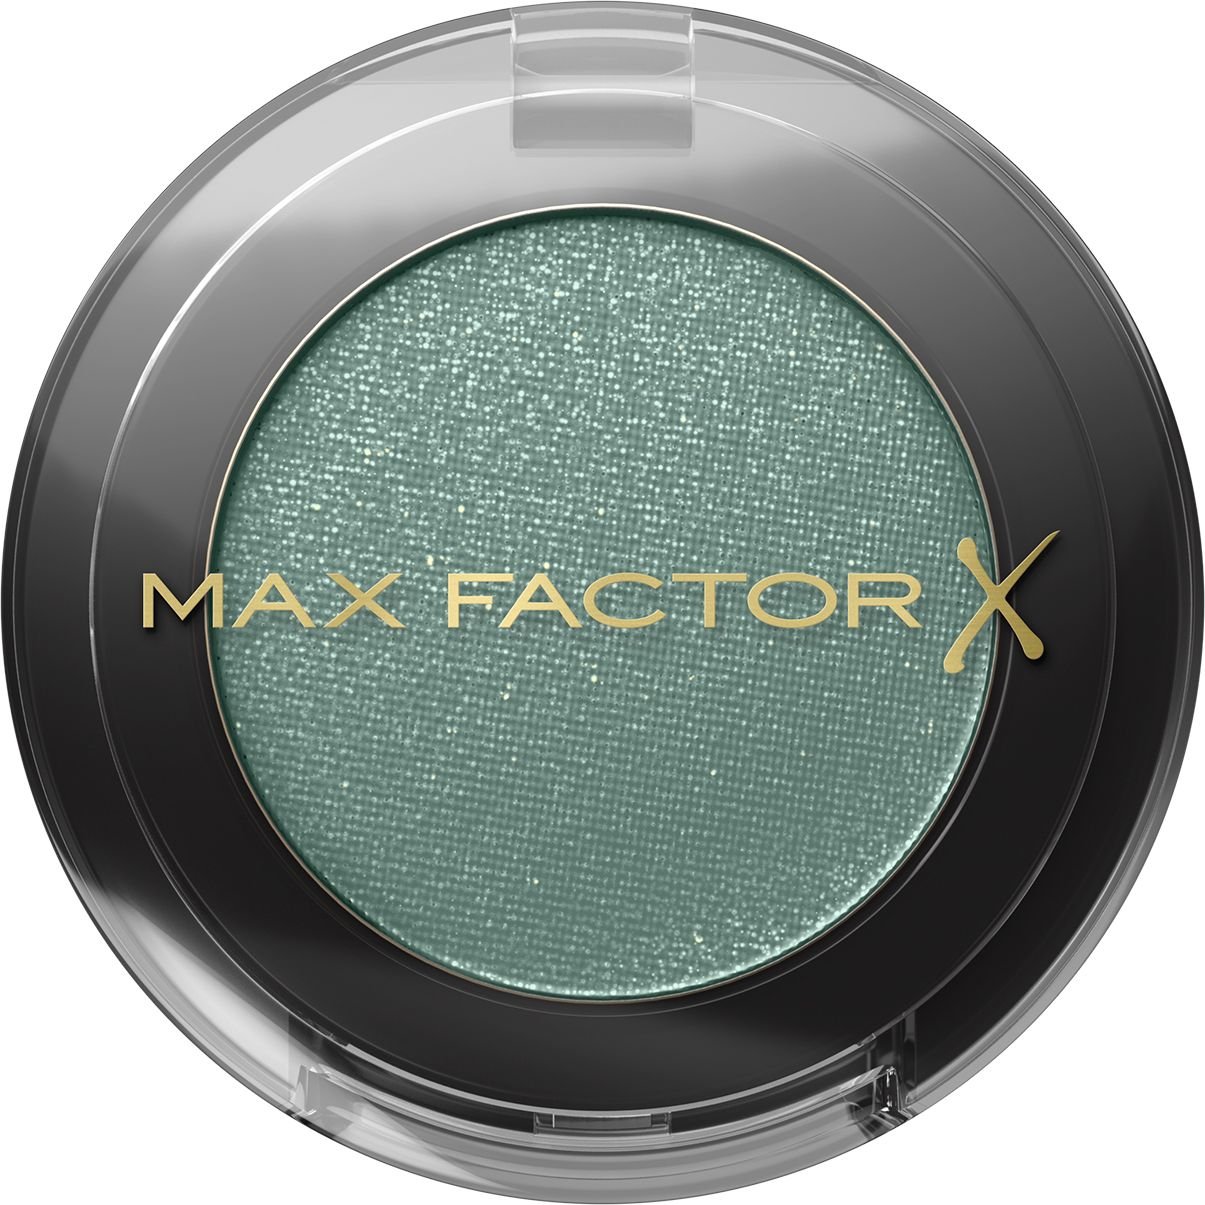 Тени для век Max Factor Masterpiece Mono Eyeshadow, тон 05 (Turquoise Euphoria), 1,85 г (8000019891757) - фото 1